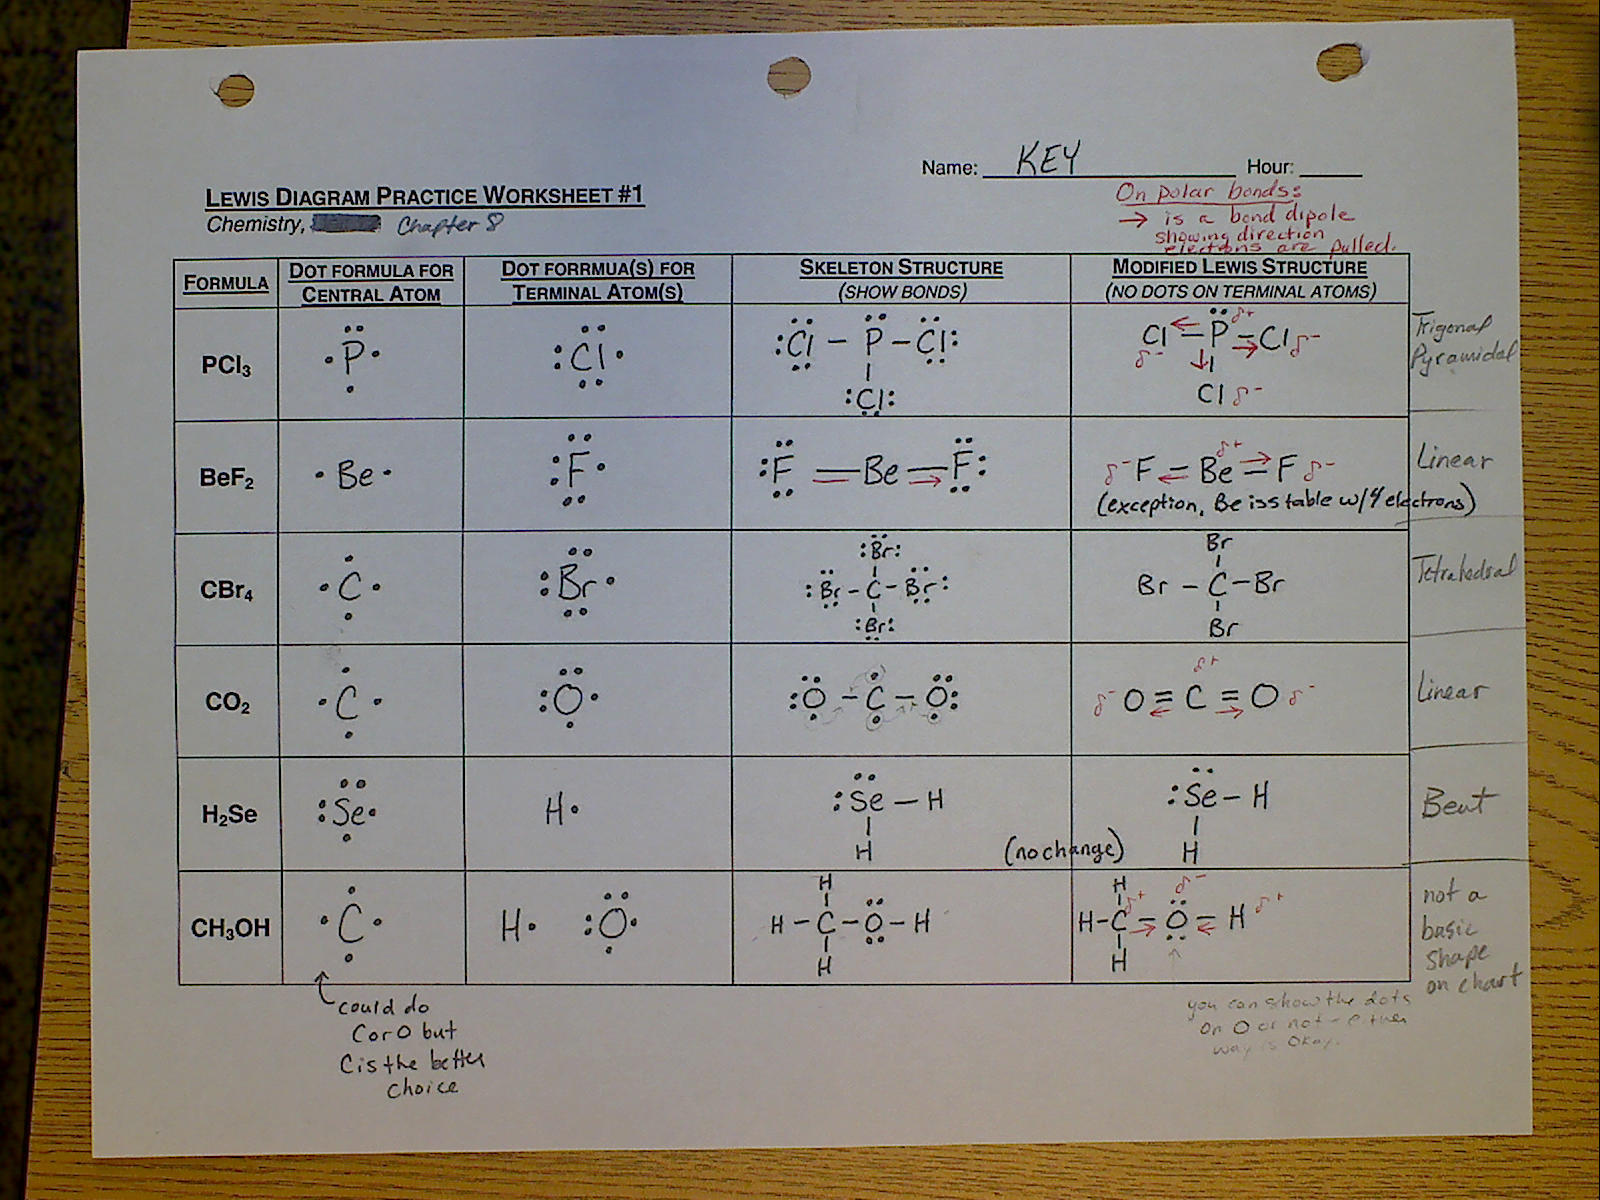 Chem215 Engelhardt: KEY for Lewis Diagram Practice Worksheets #1 #2